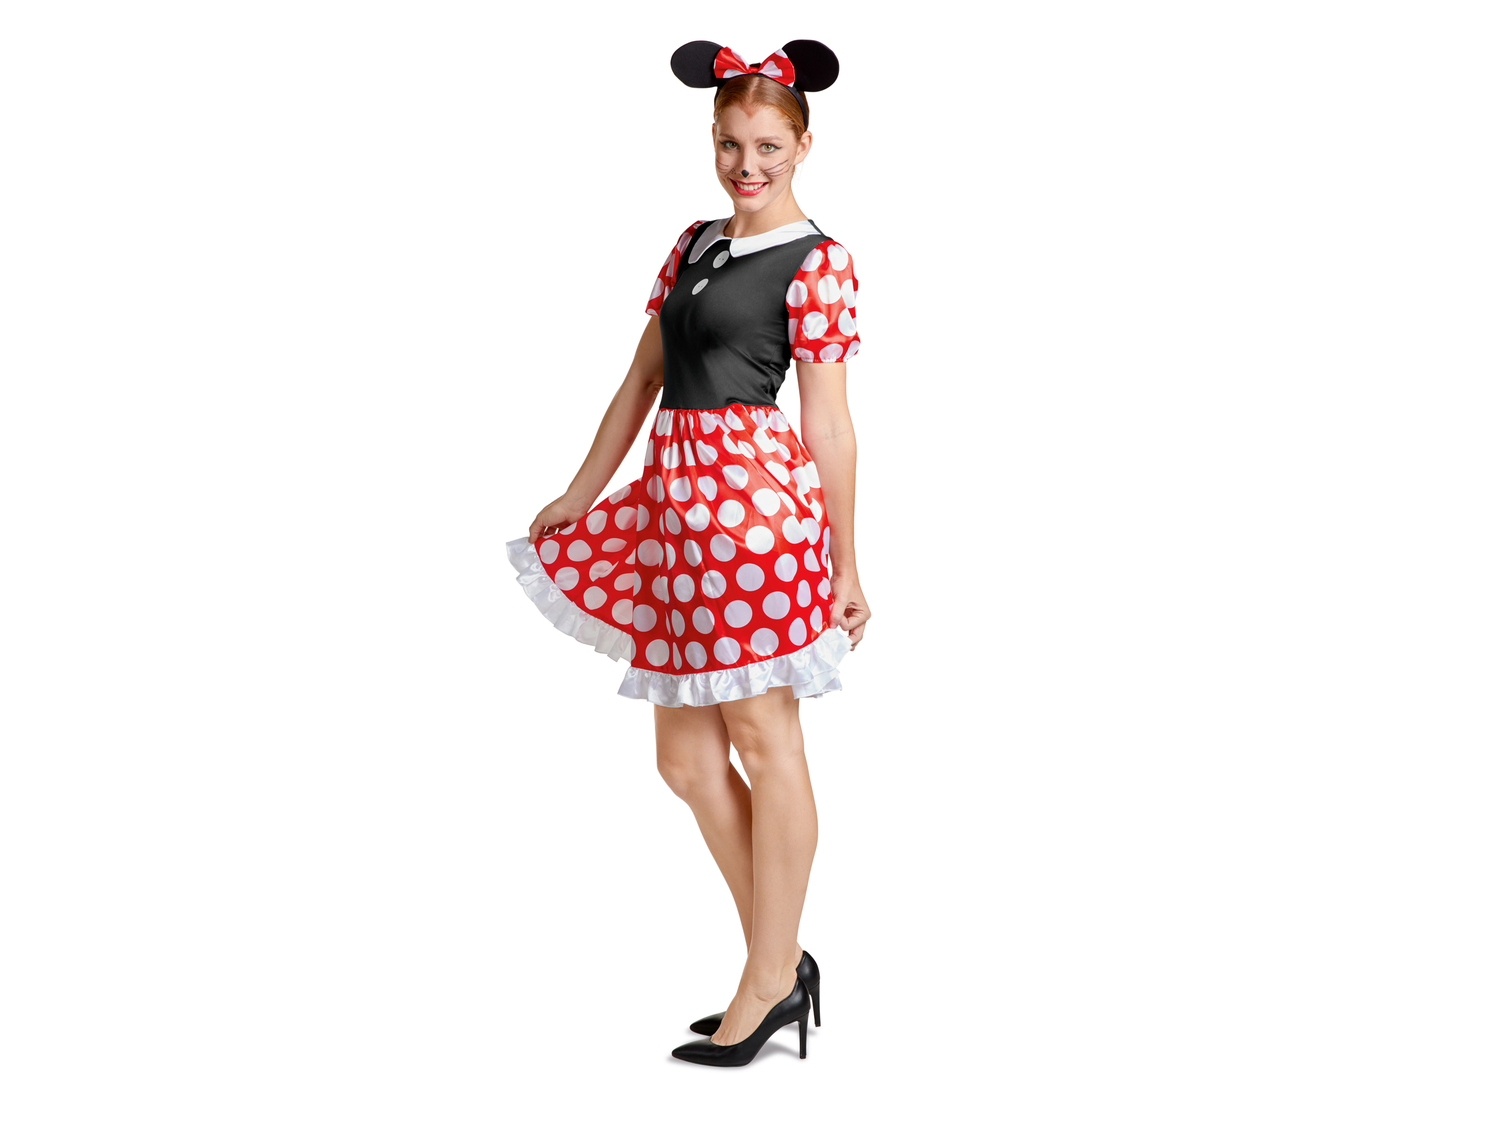 Costume di carnevale da donna Disney, prezzo 12.99 &#8364; 
Misure: S-M
Taglie ...